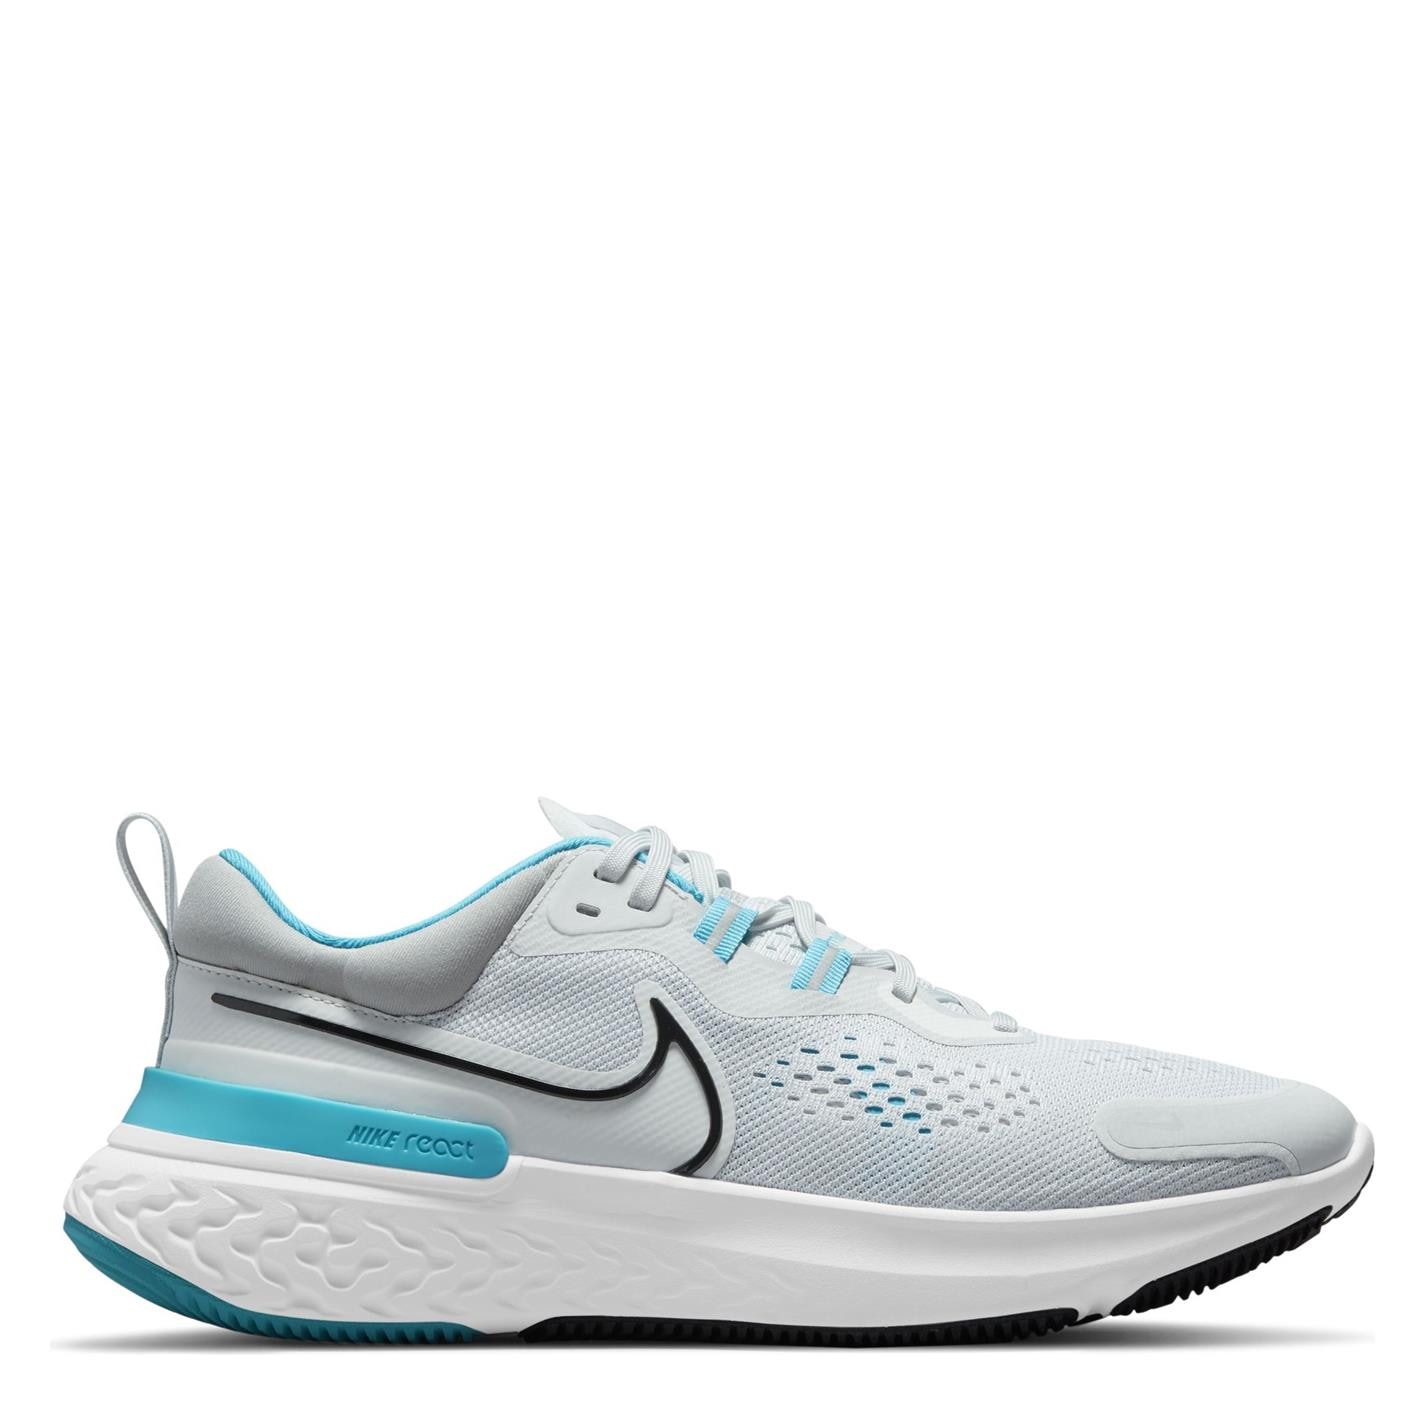 Adidasi alergare Nike React Miler 2 pentru Barbati alb albastru